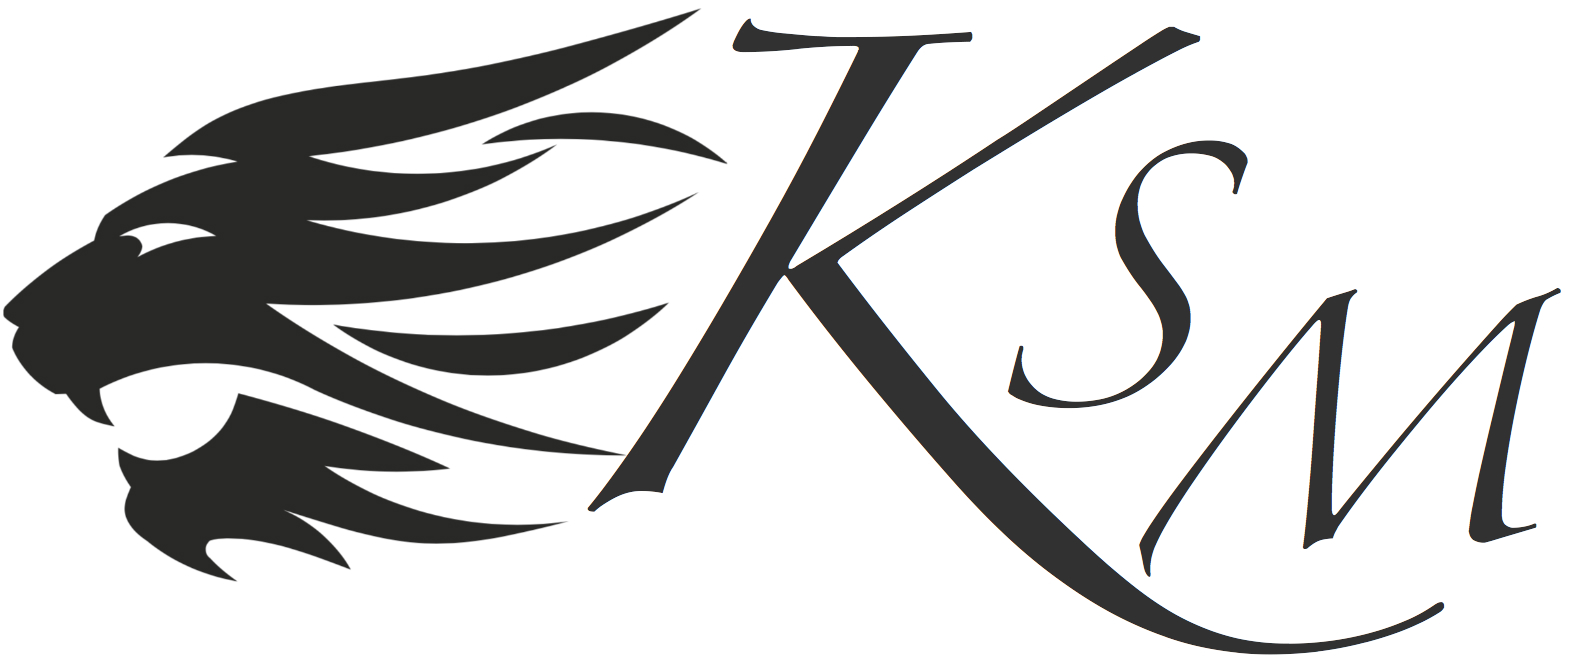 KSM Agency Providing Leads For Businesses Logo